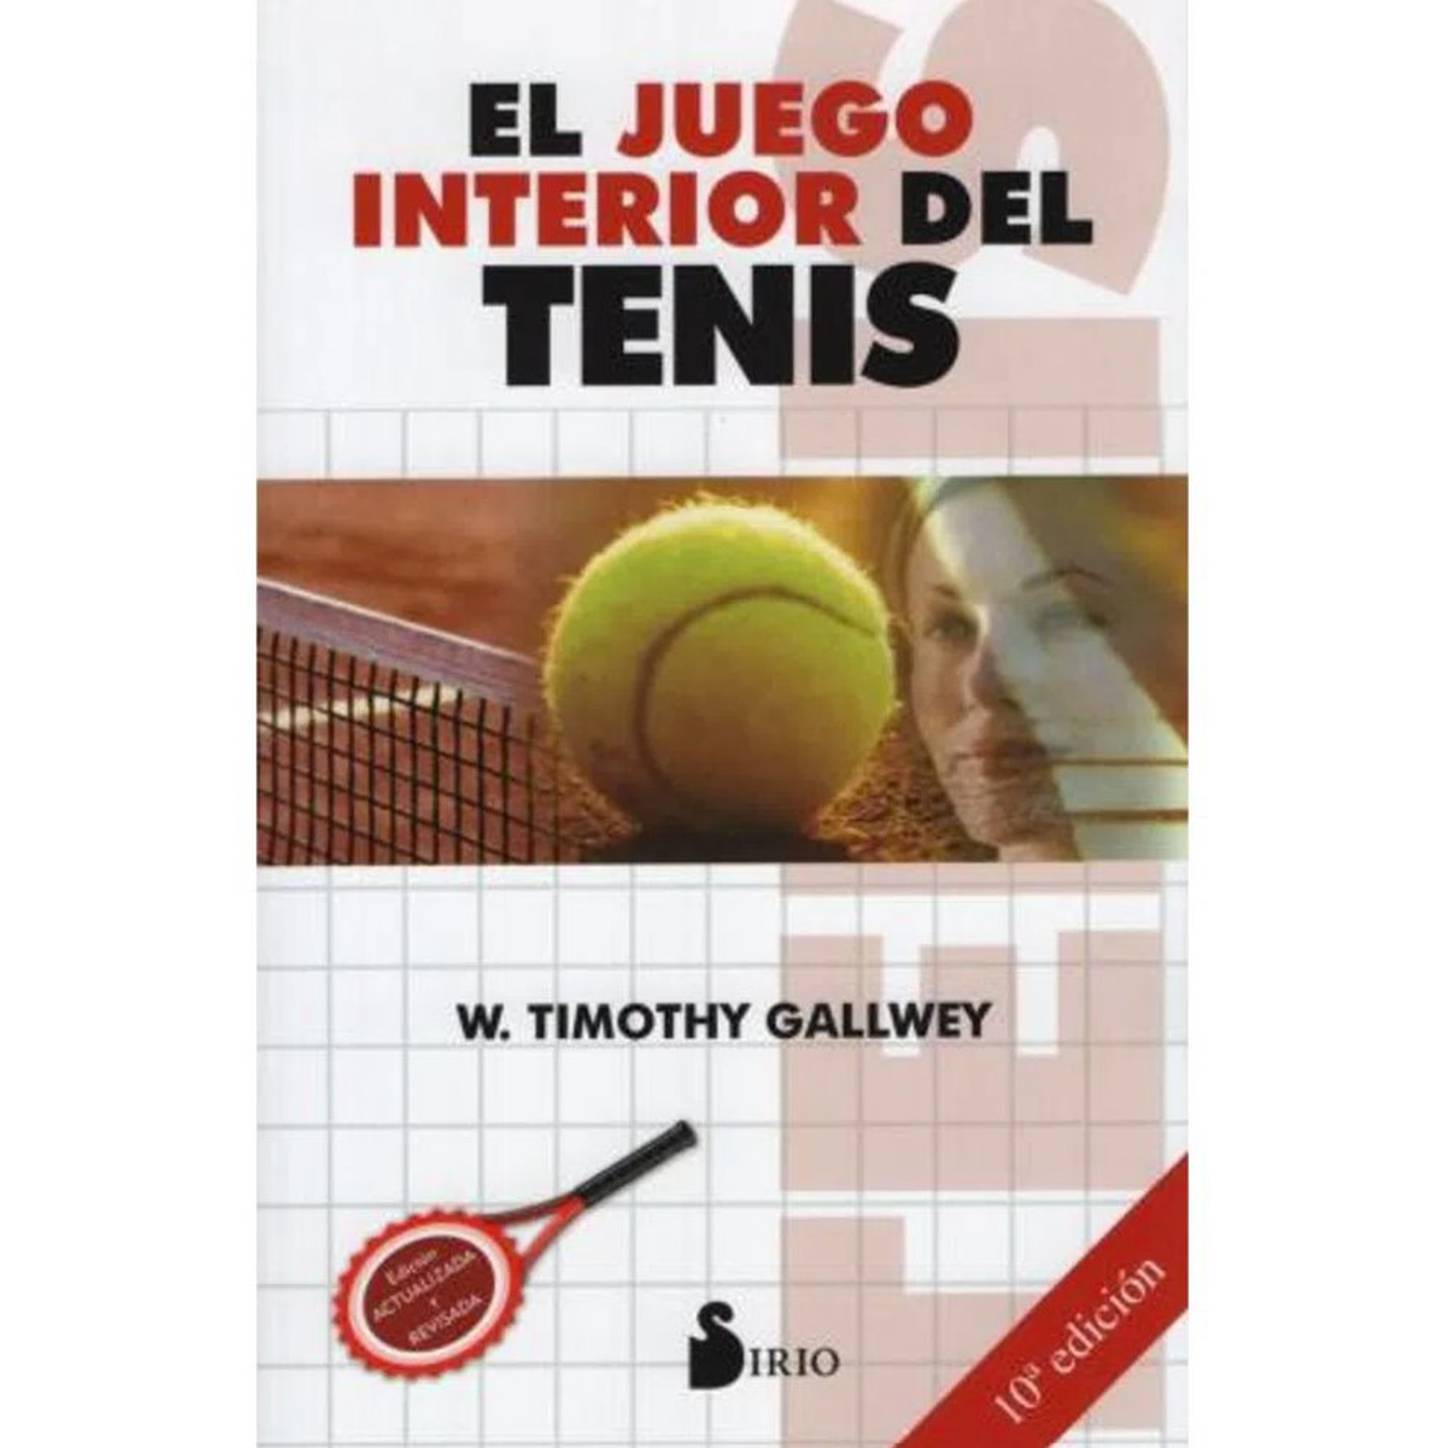 El juego interior del tenis, de Robert Gallwey